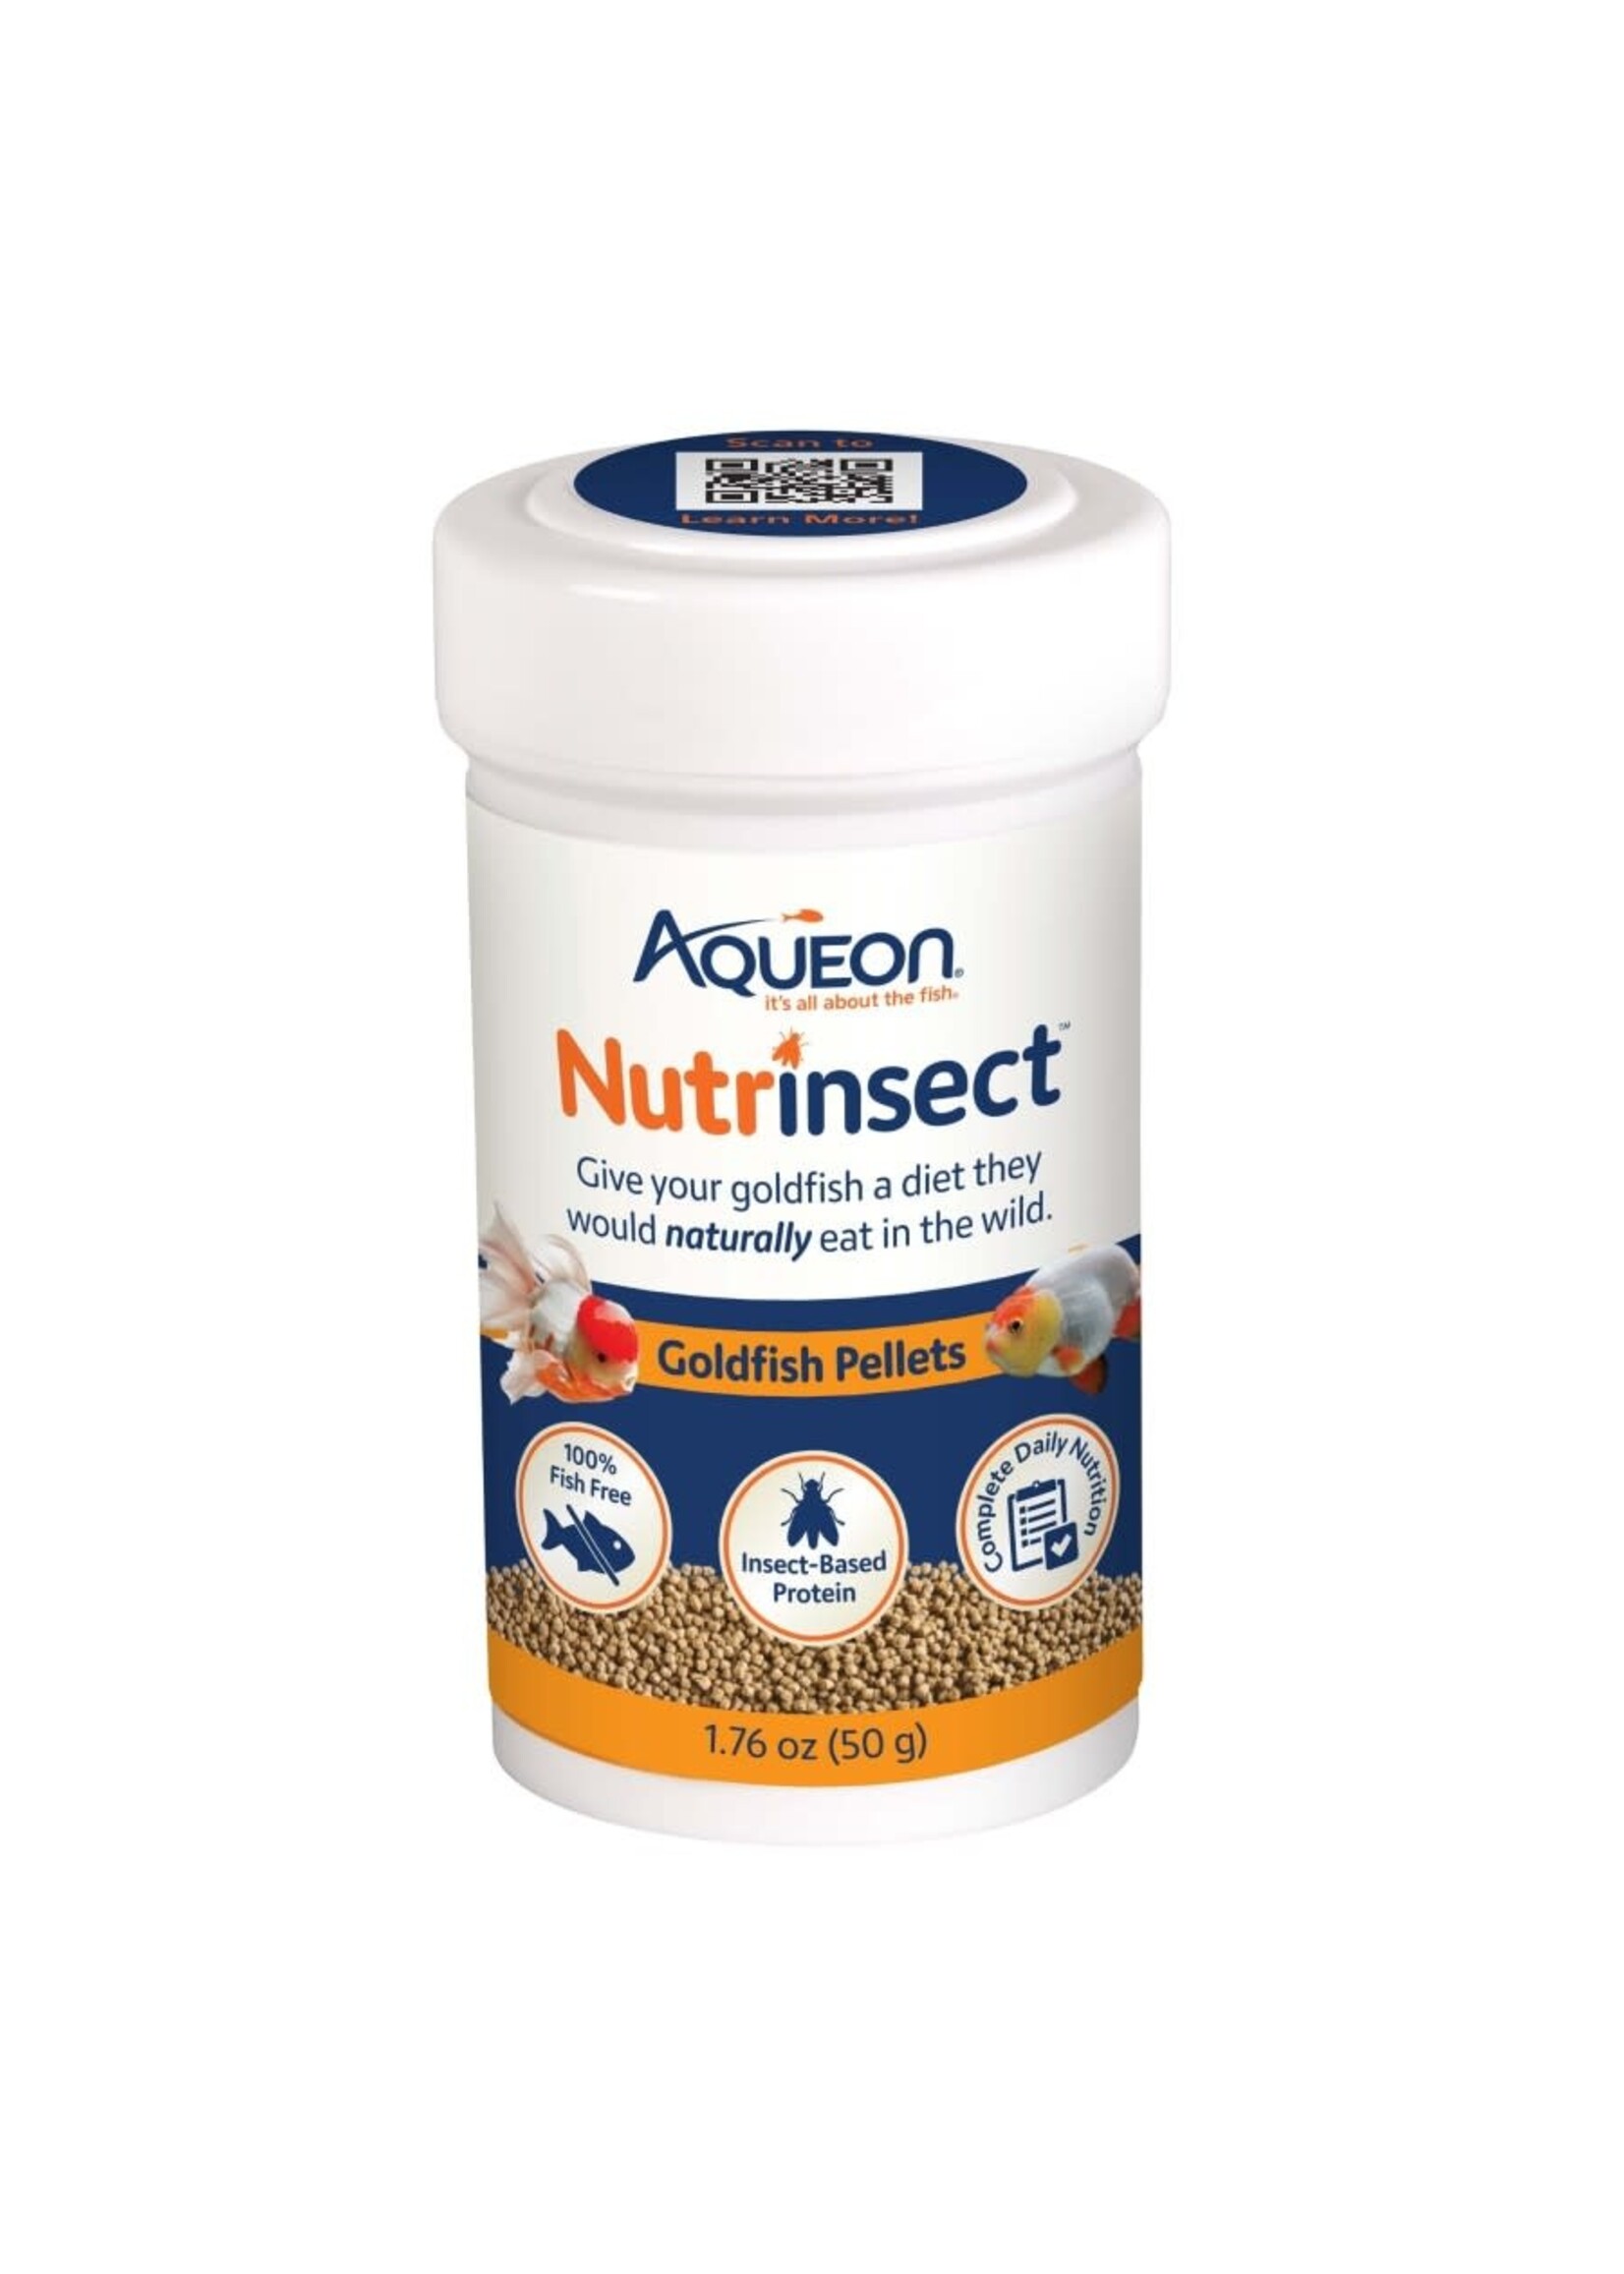 Aqueon NUTRINSECT GOLDFISH PELLETS 1.76 OZ